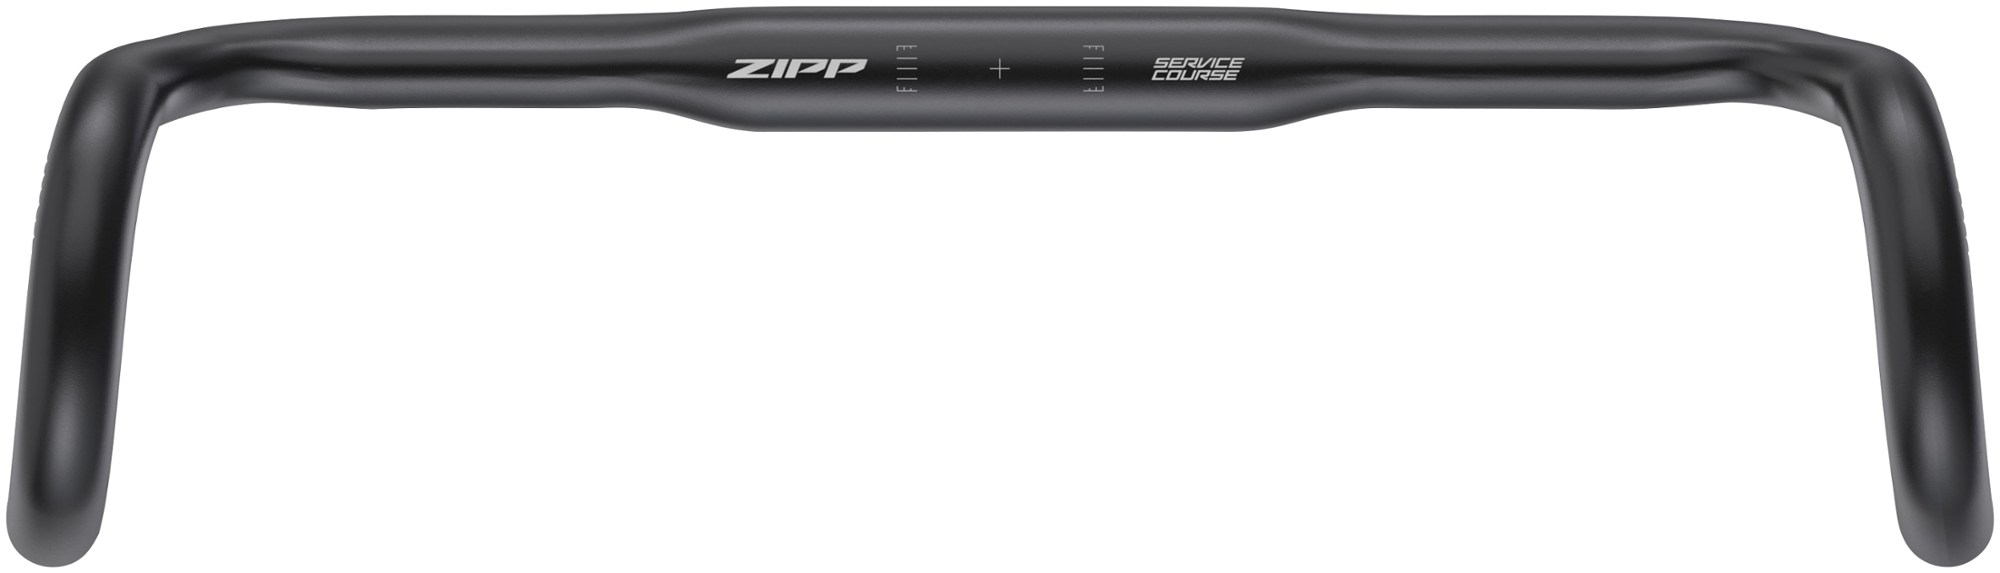 Курс обслуживания 70 Откидной руль XPLR Zipp, черный